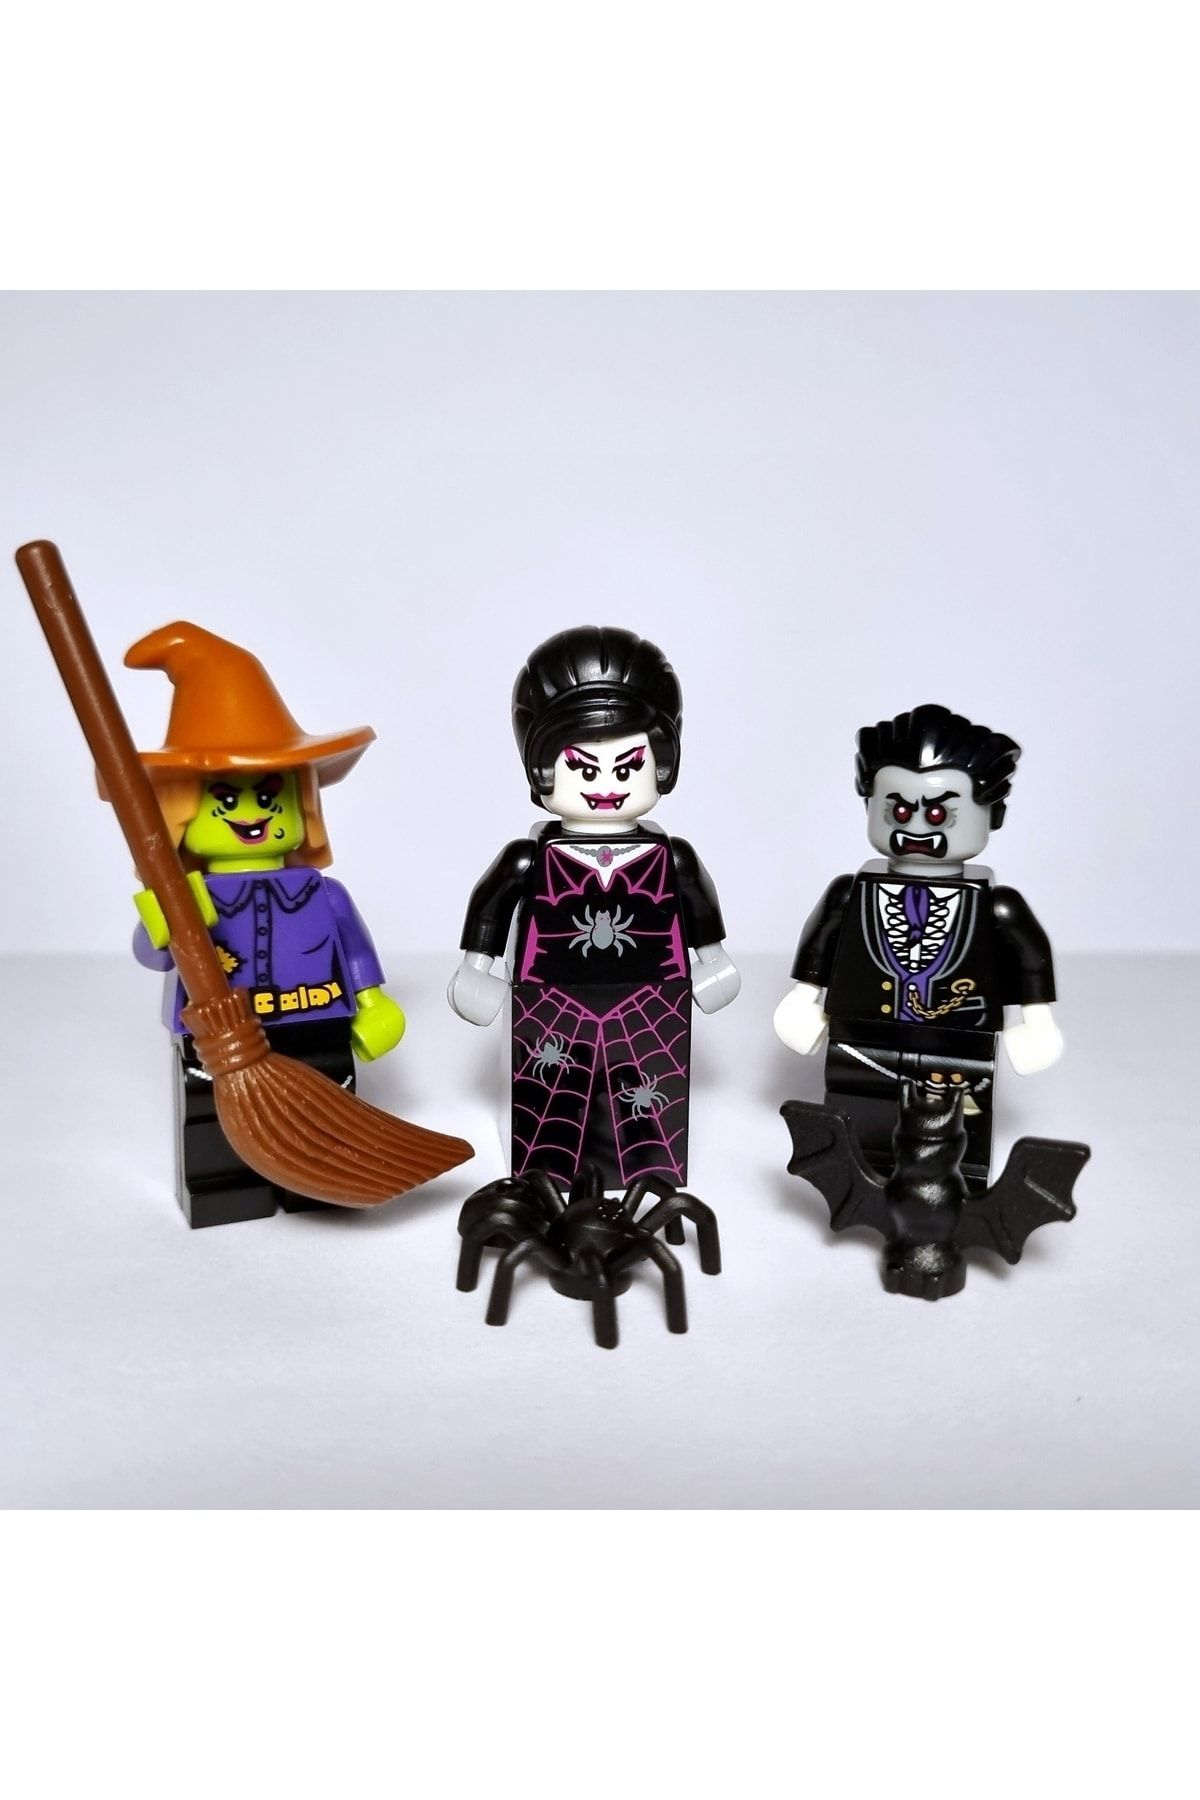 LEGO Bam Halloween Özel Vampir Örümcek Kadın Ve Cadı Minifigür